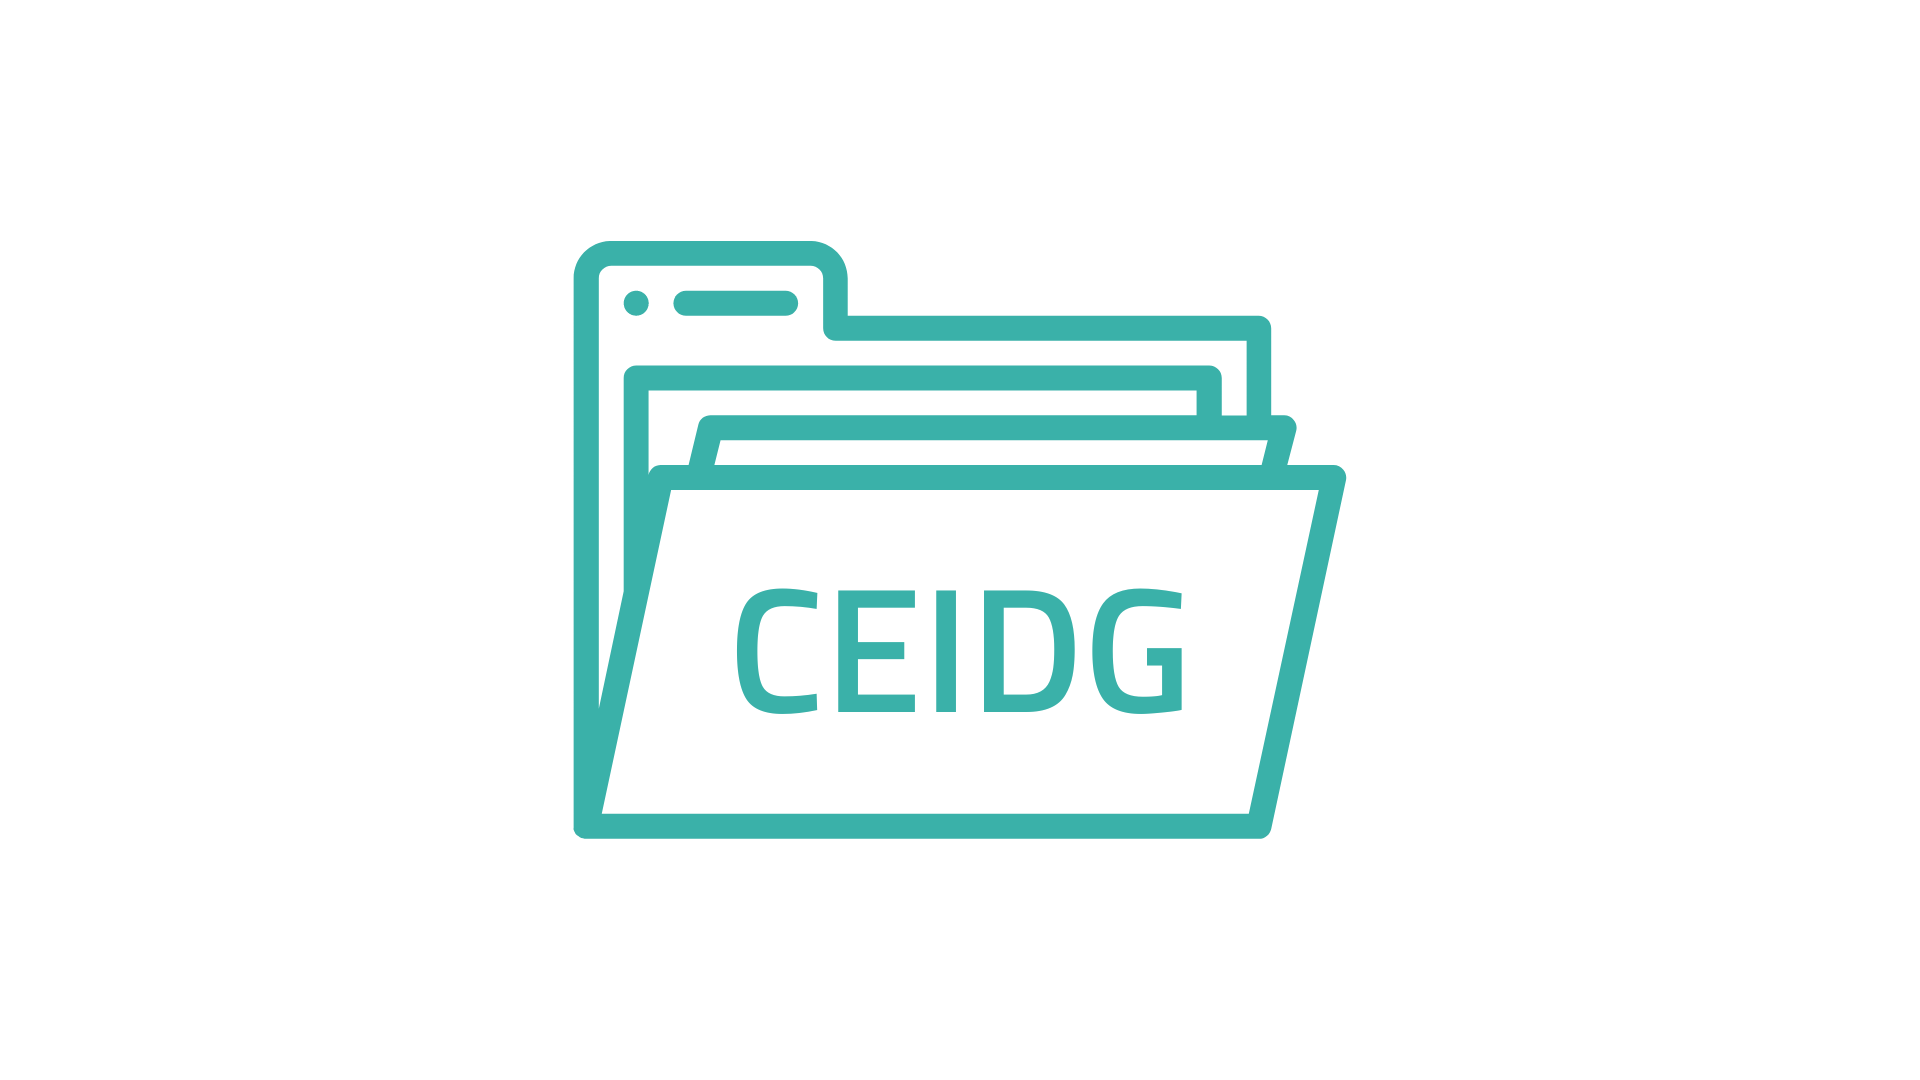 CEIDG – czym jest i do czego służy?